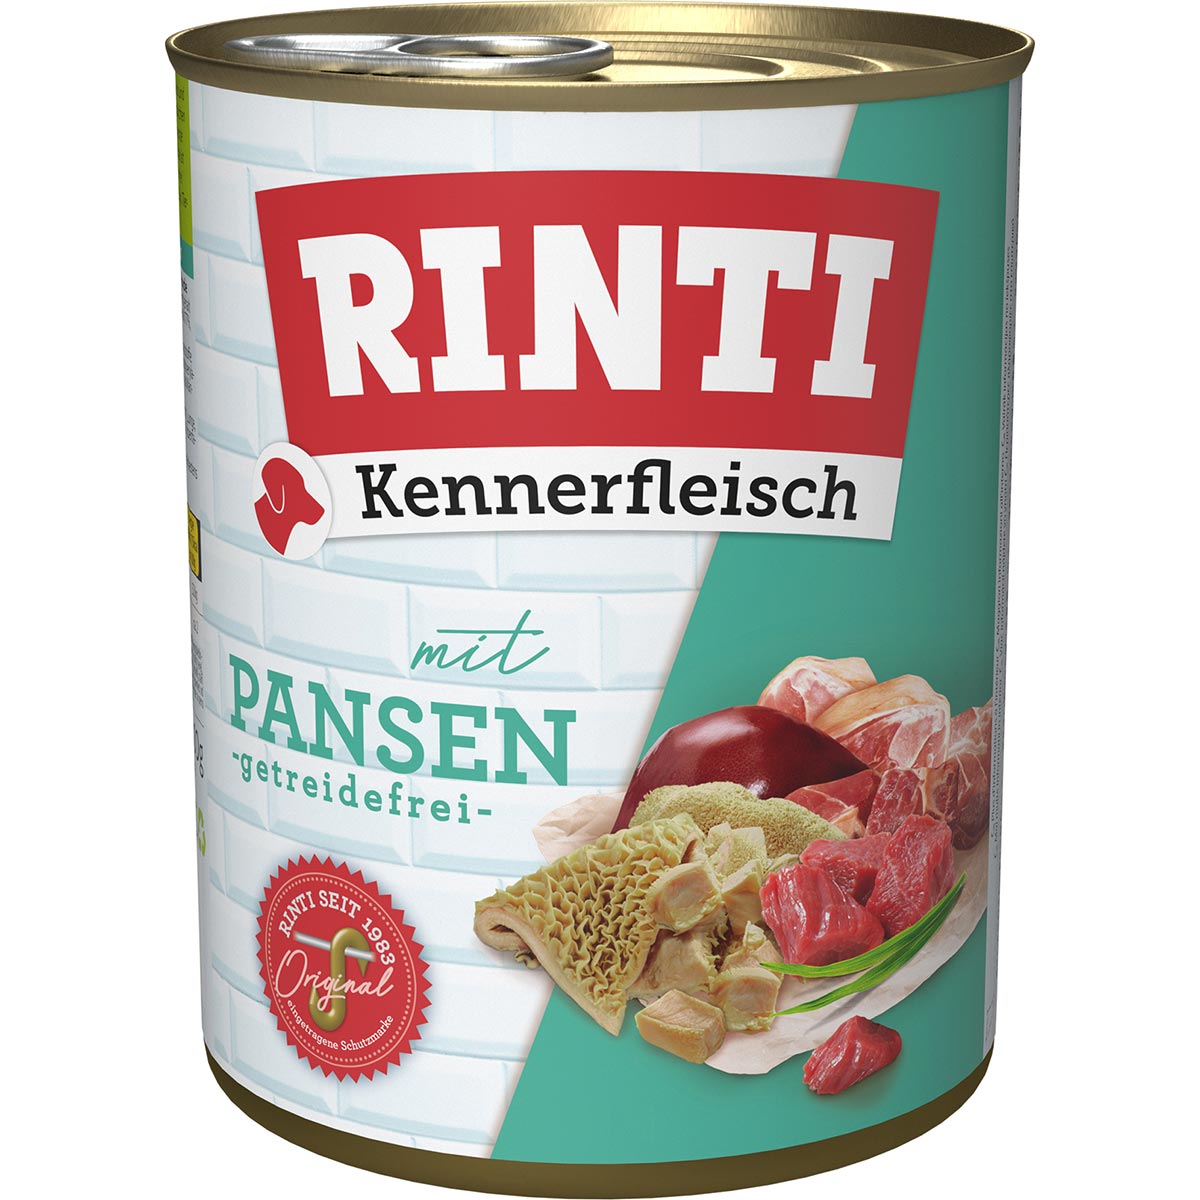 Rinti Kennerfleisch Pansen 24x800g von Rinti